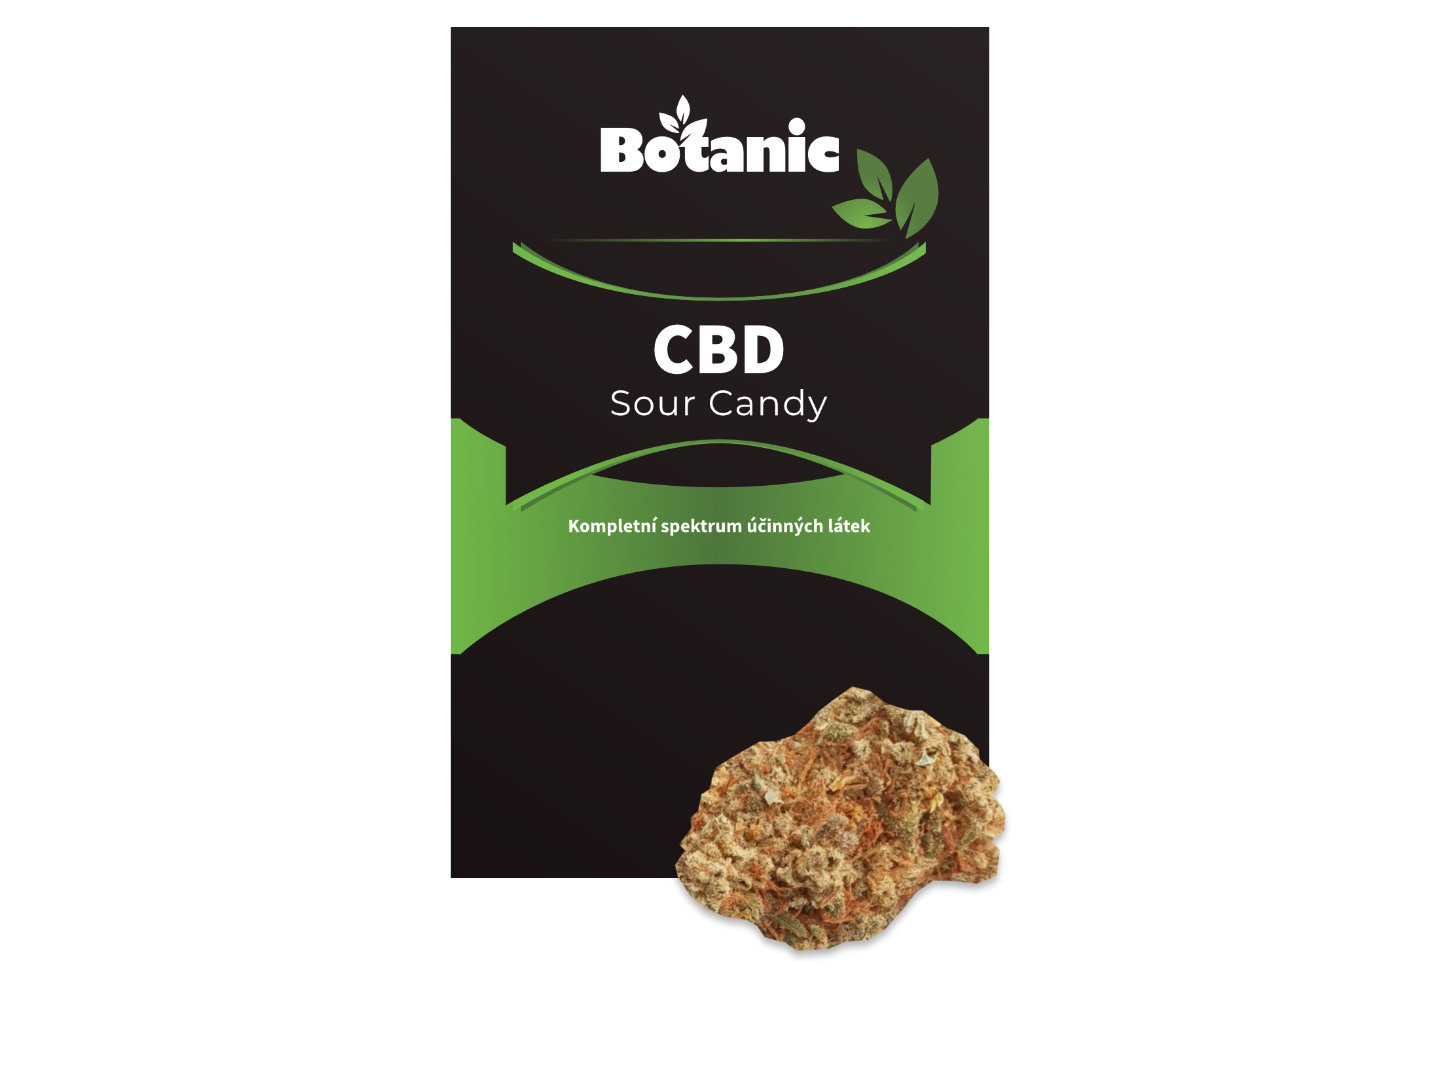 Botanic CBD konopí - Sour Candy 3 g - Výhodné balení